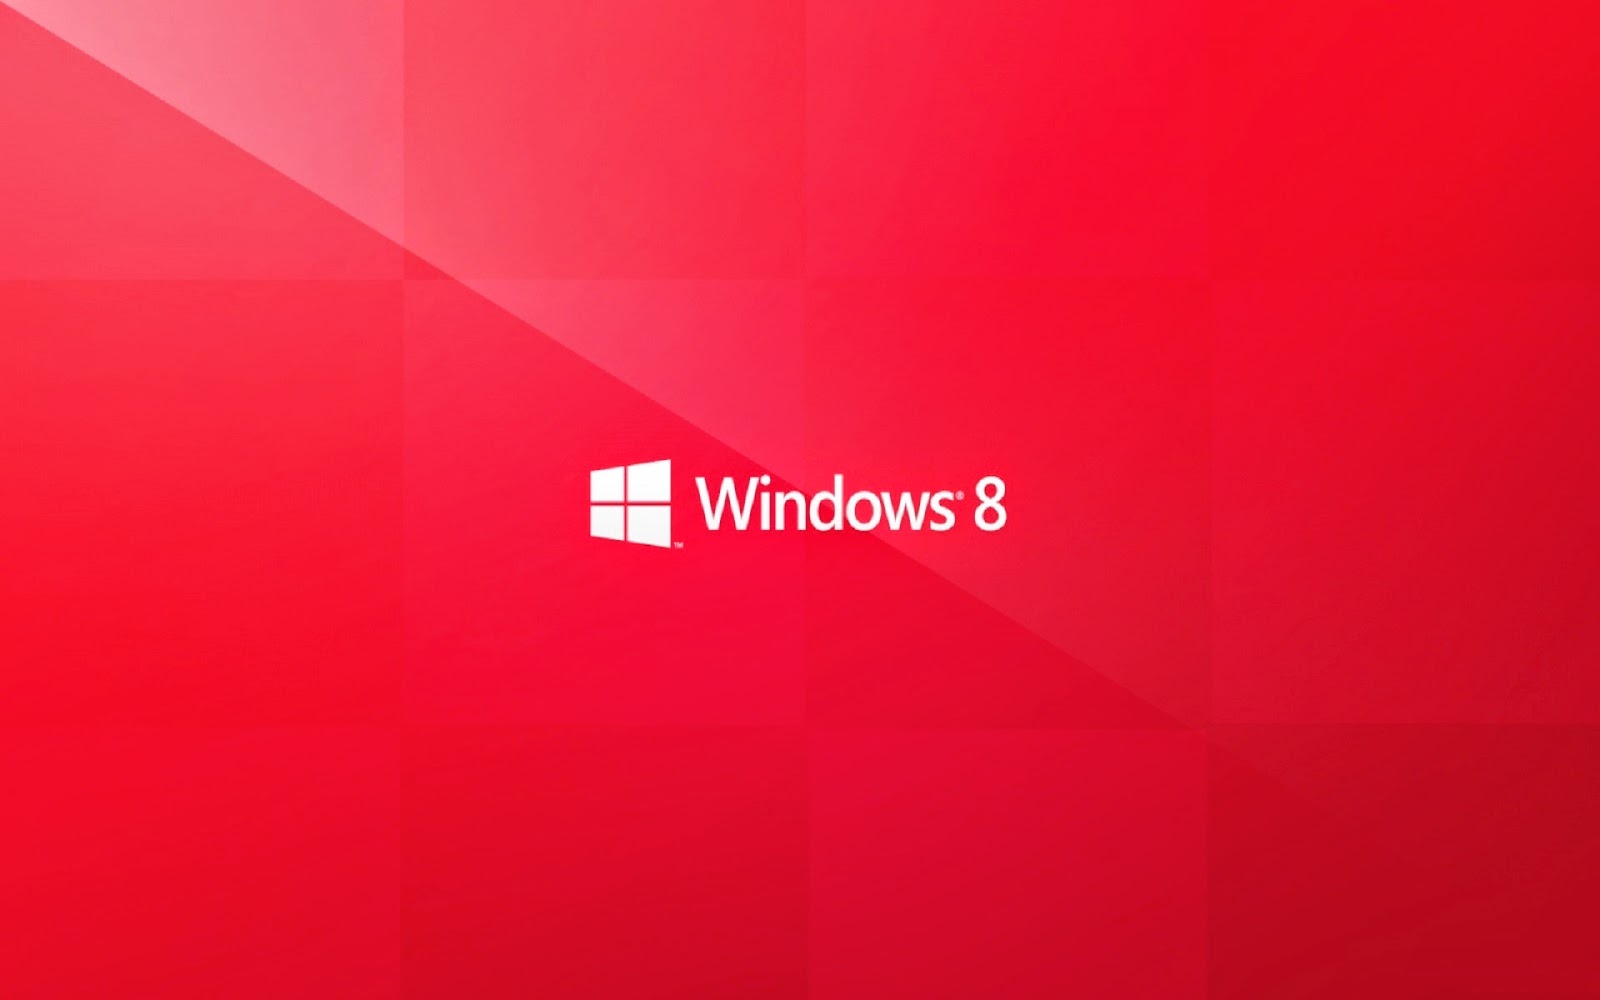 Windows 8.1 desktop backgrounds: Hãy trang trí cho nền desktop của bạn với những hình ảnh đẹp và ấn tượng về Windows 8.